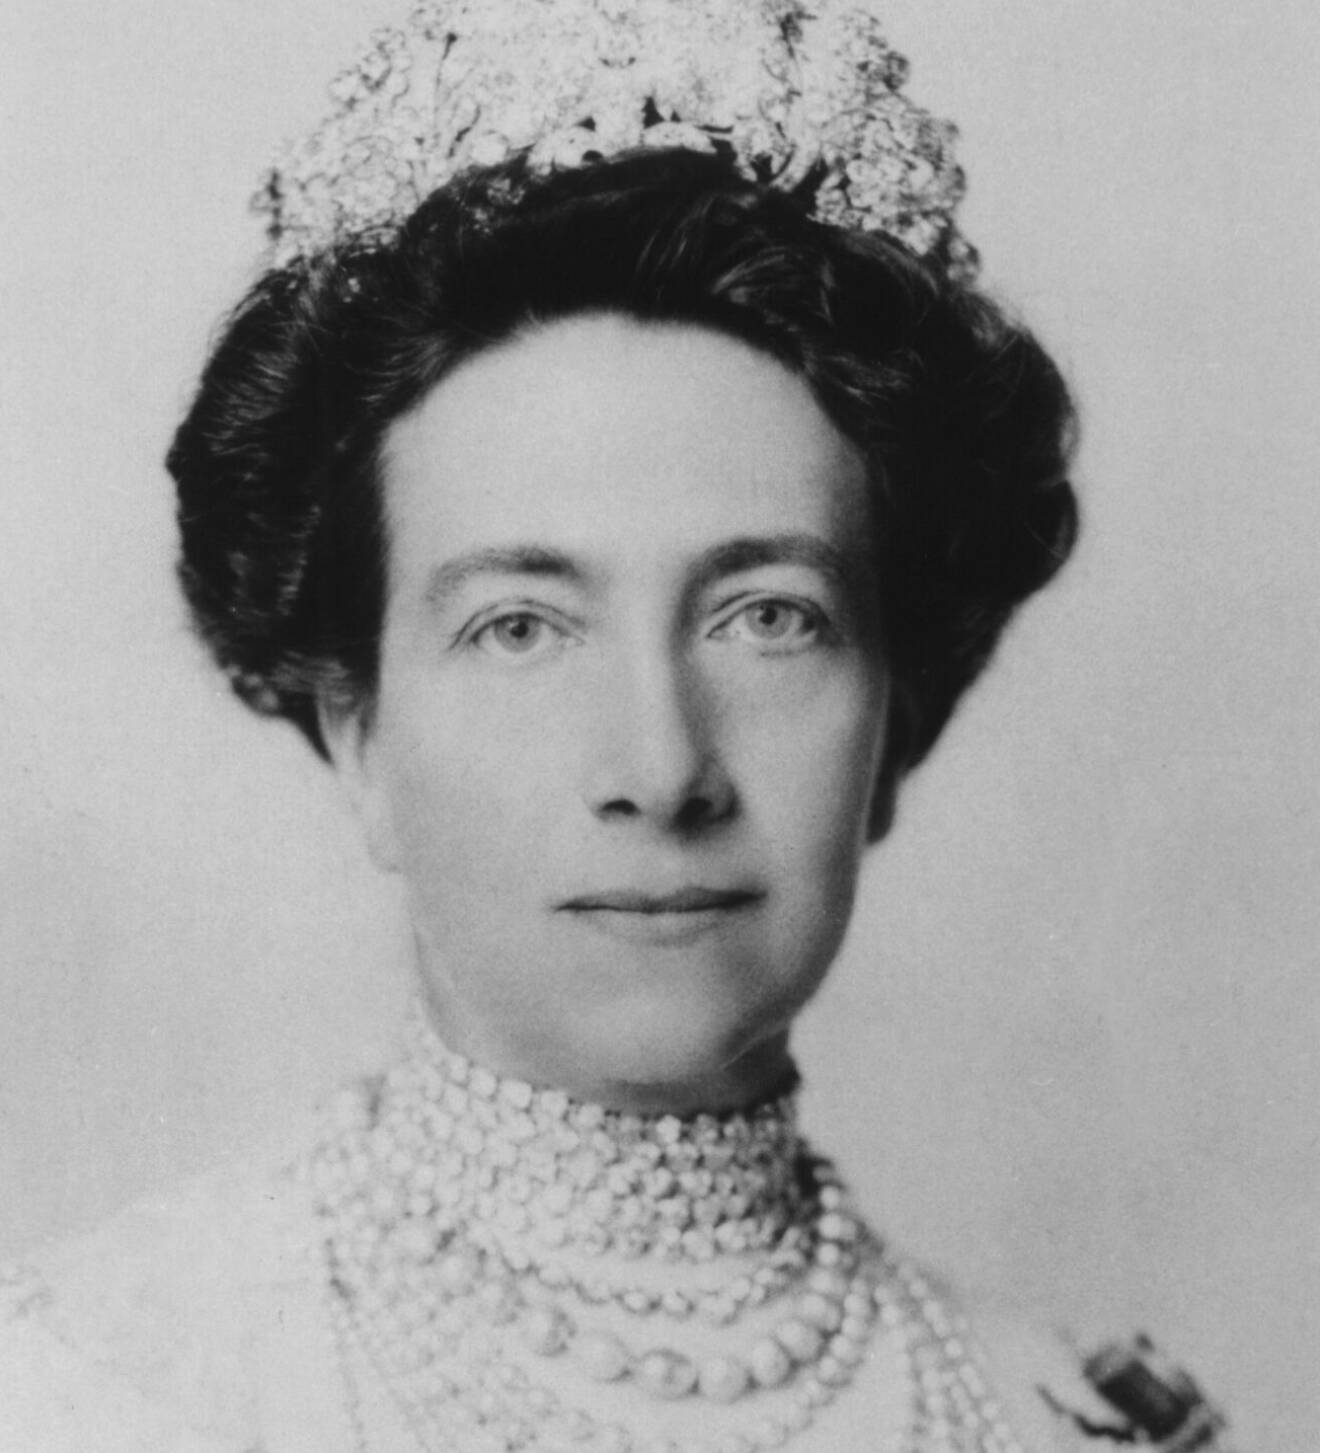 Drottning Victoria